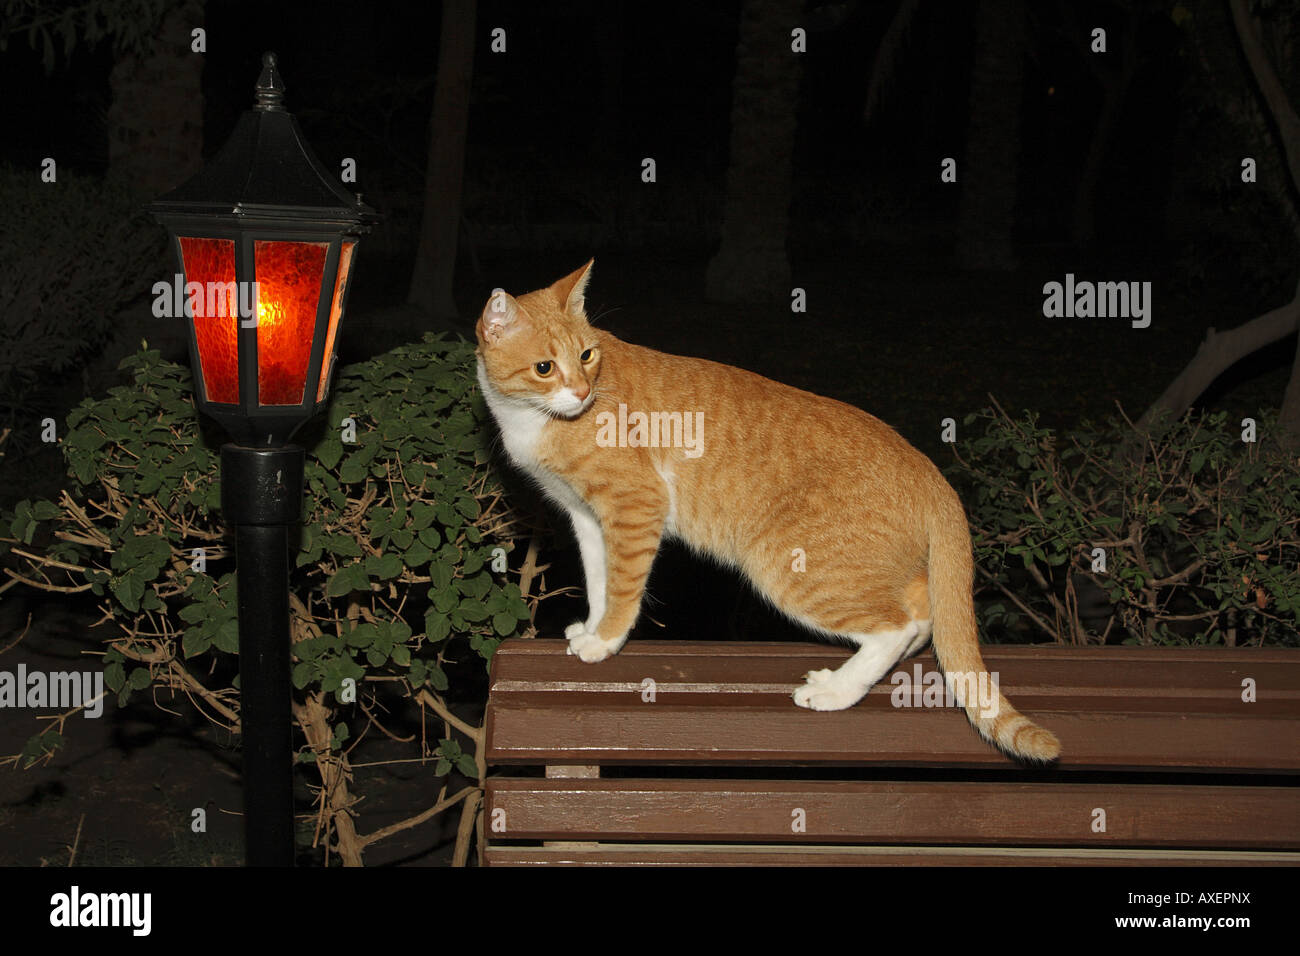 Un chat domestique est debout sur un banc à côté d'une lanterne de jardin la nuit Banque D'Images